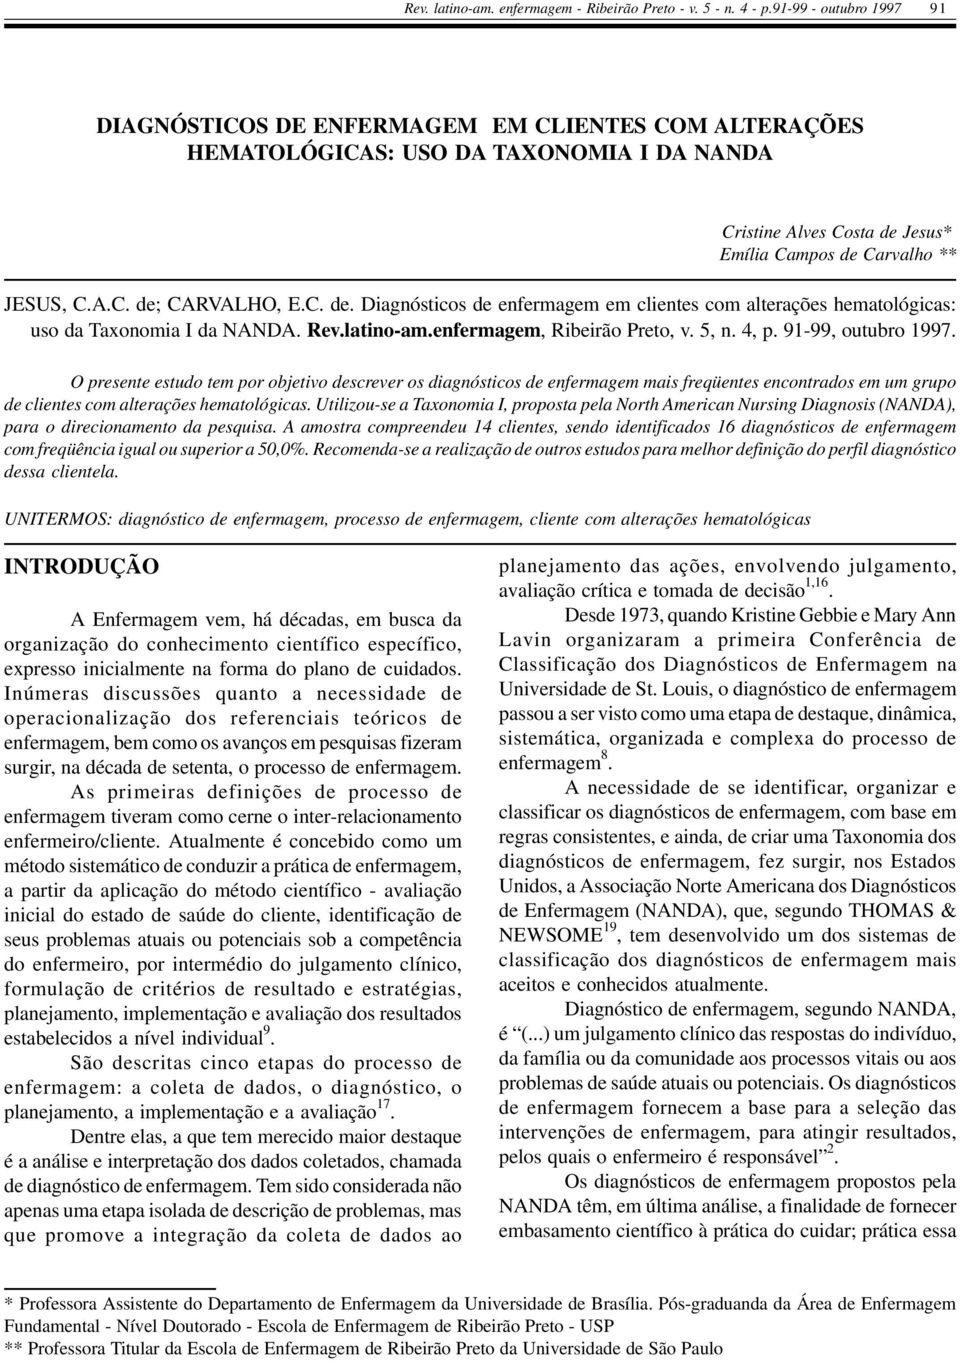 C. de. Diagnósticos de enfermagem em clientes com alterações hematológicas: uso da Taxonomia I da NANDA. Rev.latino-am.enfermagem, Ribeirão Preto, v. 5, n. 4, p. 91-99, outubro 1997.